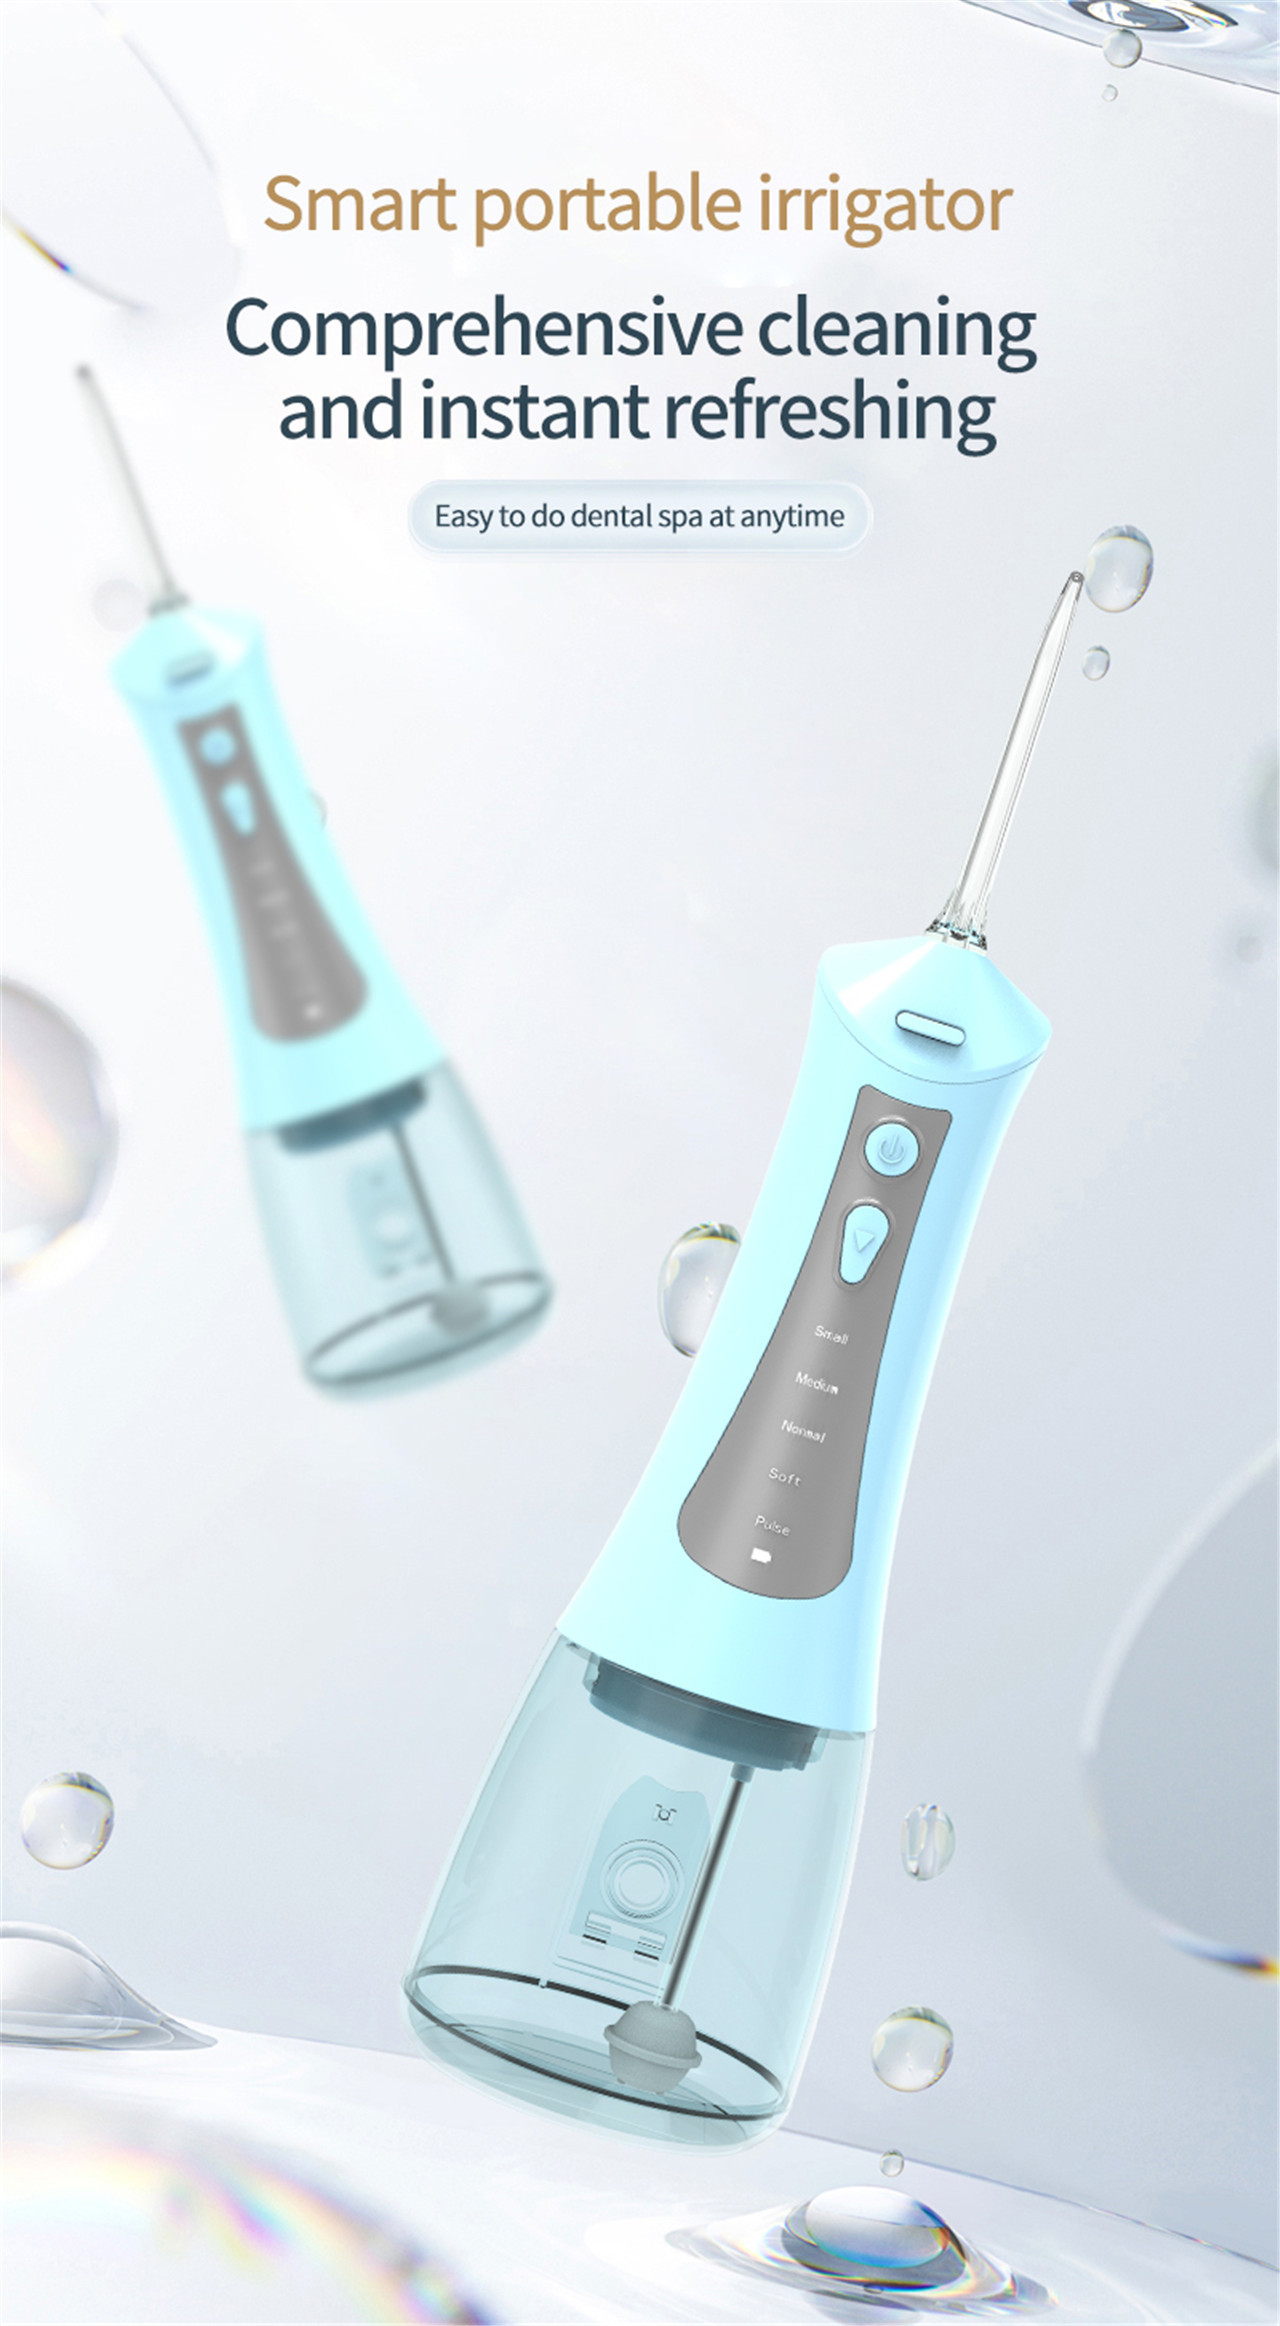 high pressure dental irrigator oral care yakanakisa yemagetsi mvura flosser (1)